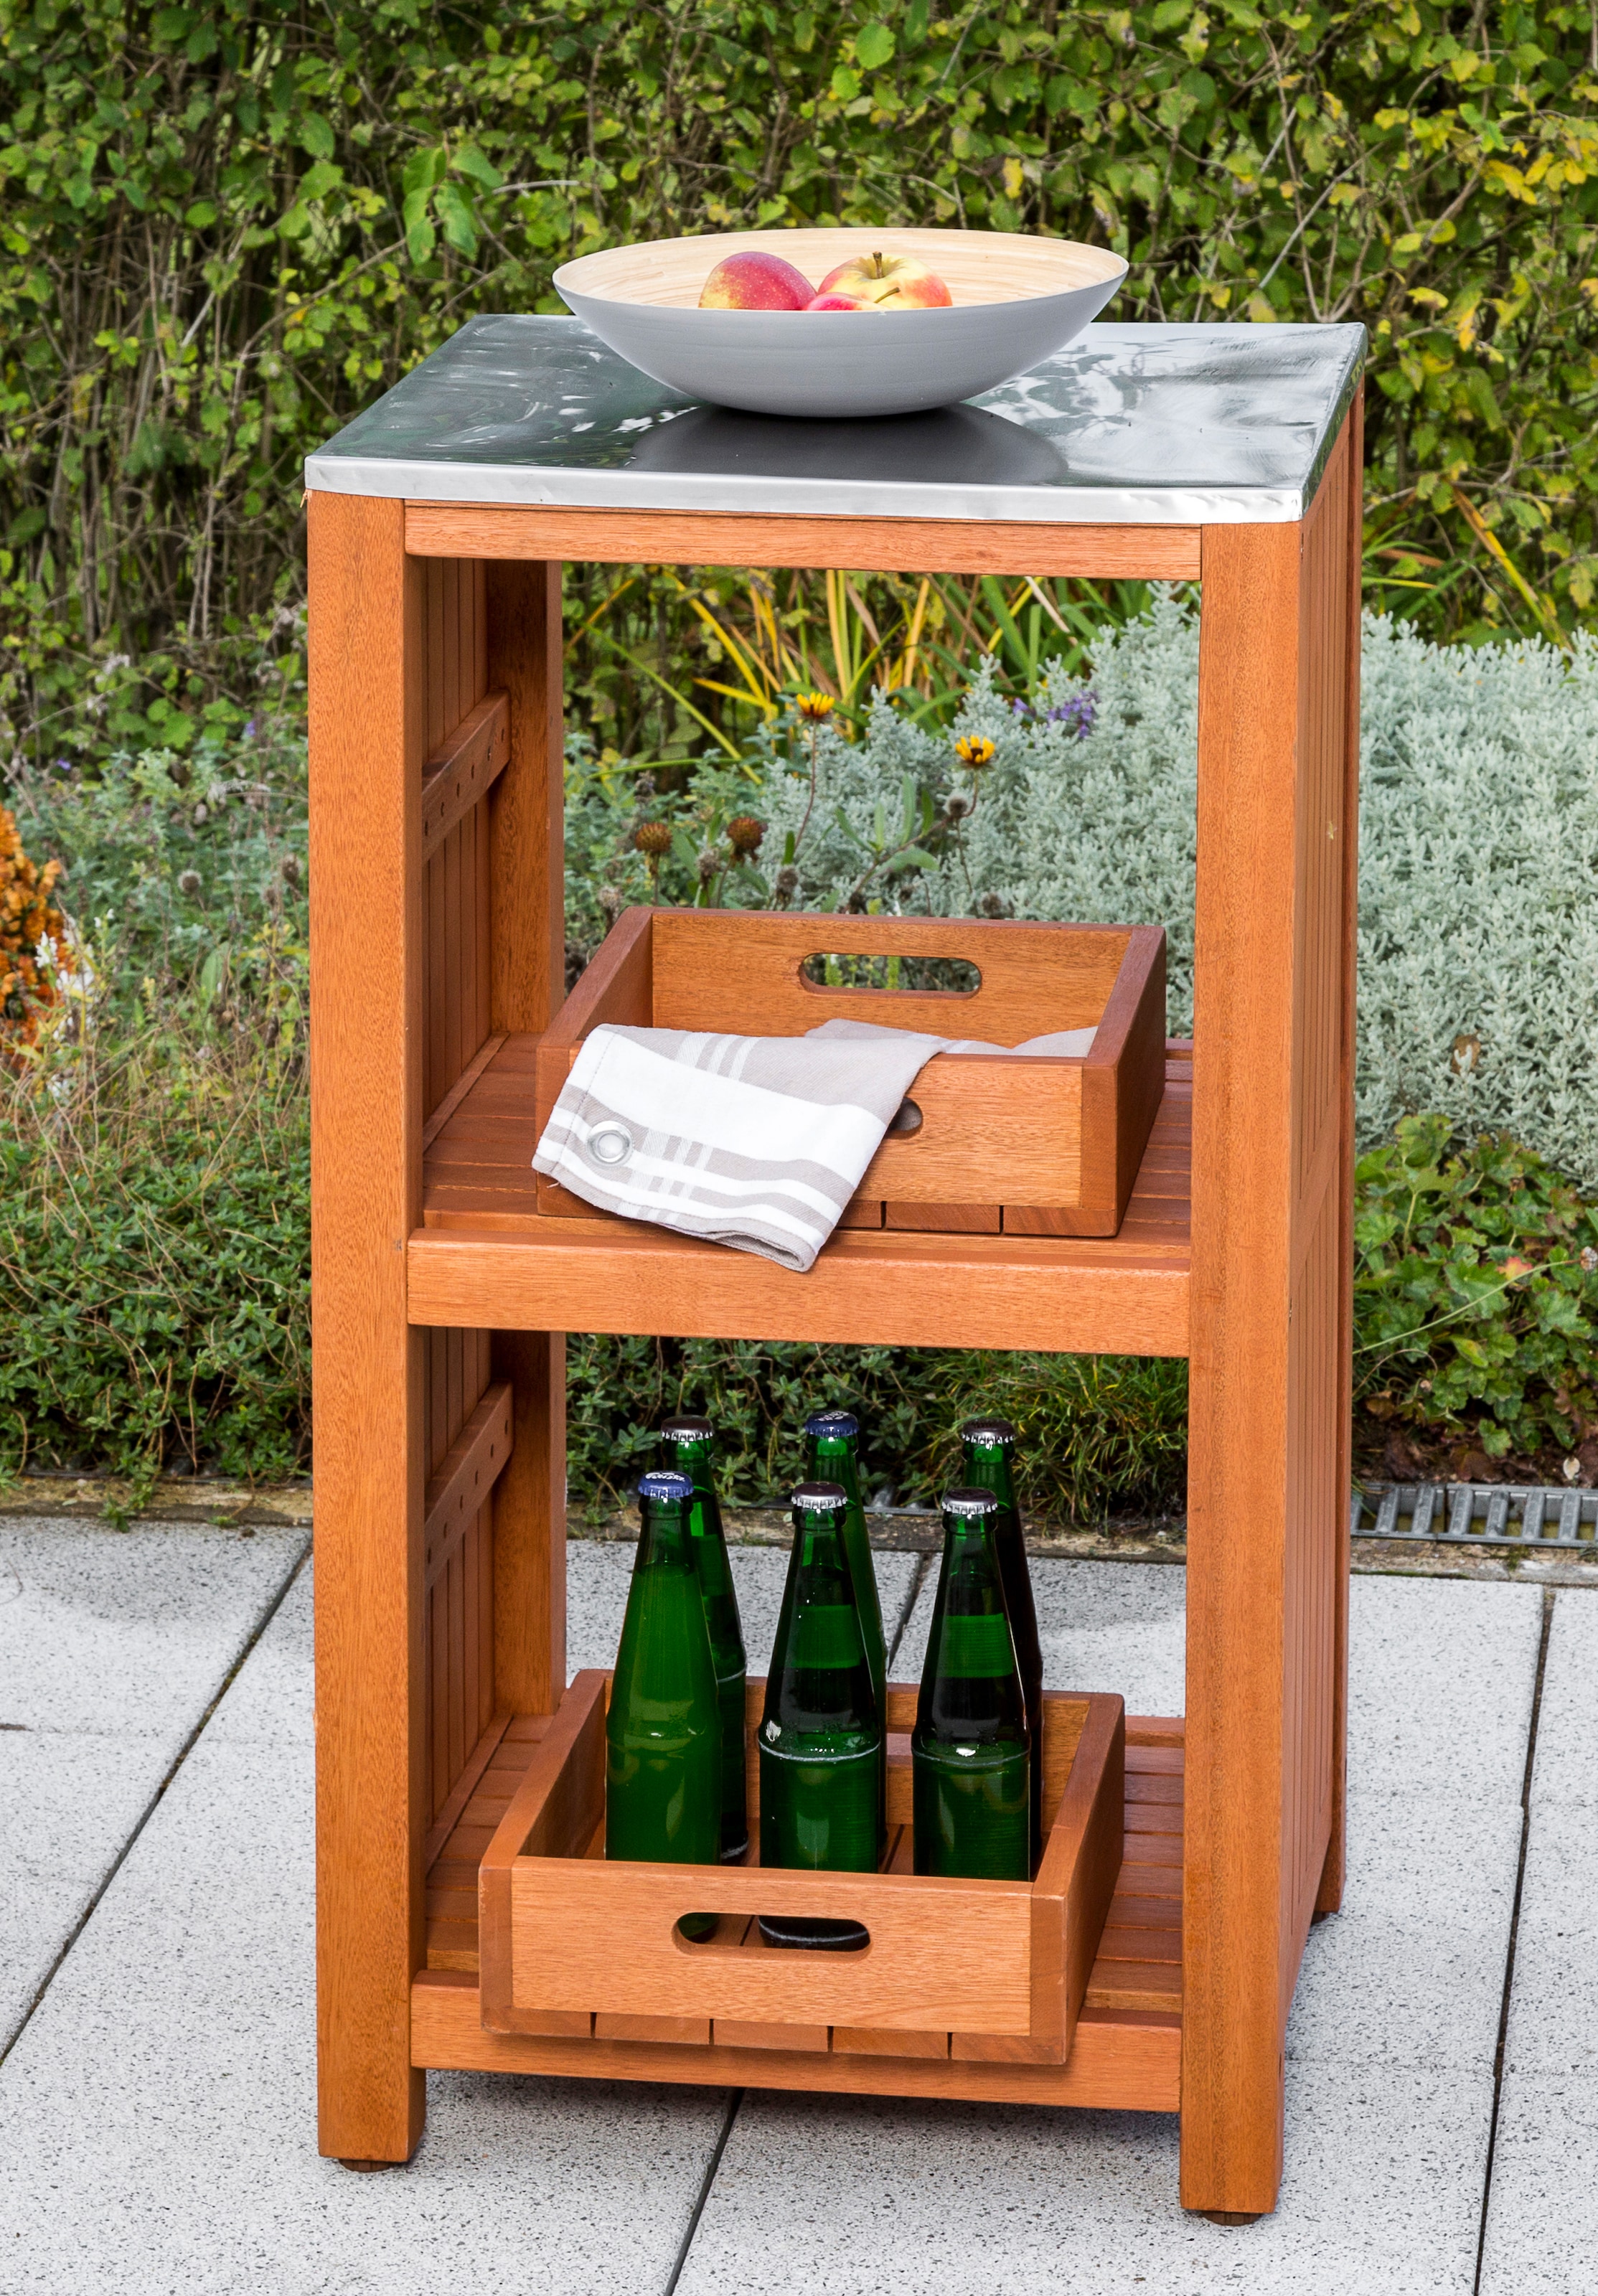 MERXX Gartentisch, Sideboard für Spültisch, Akazie kaufen bei OTTO